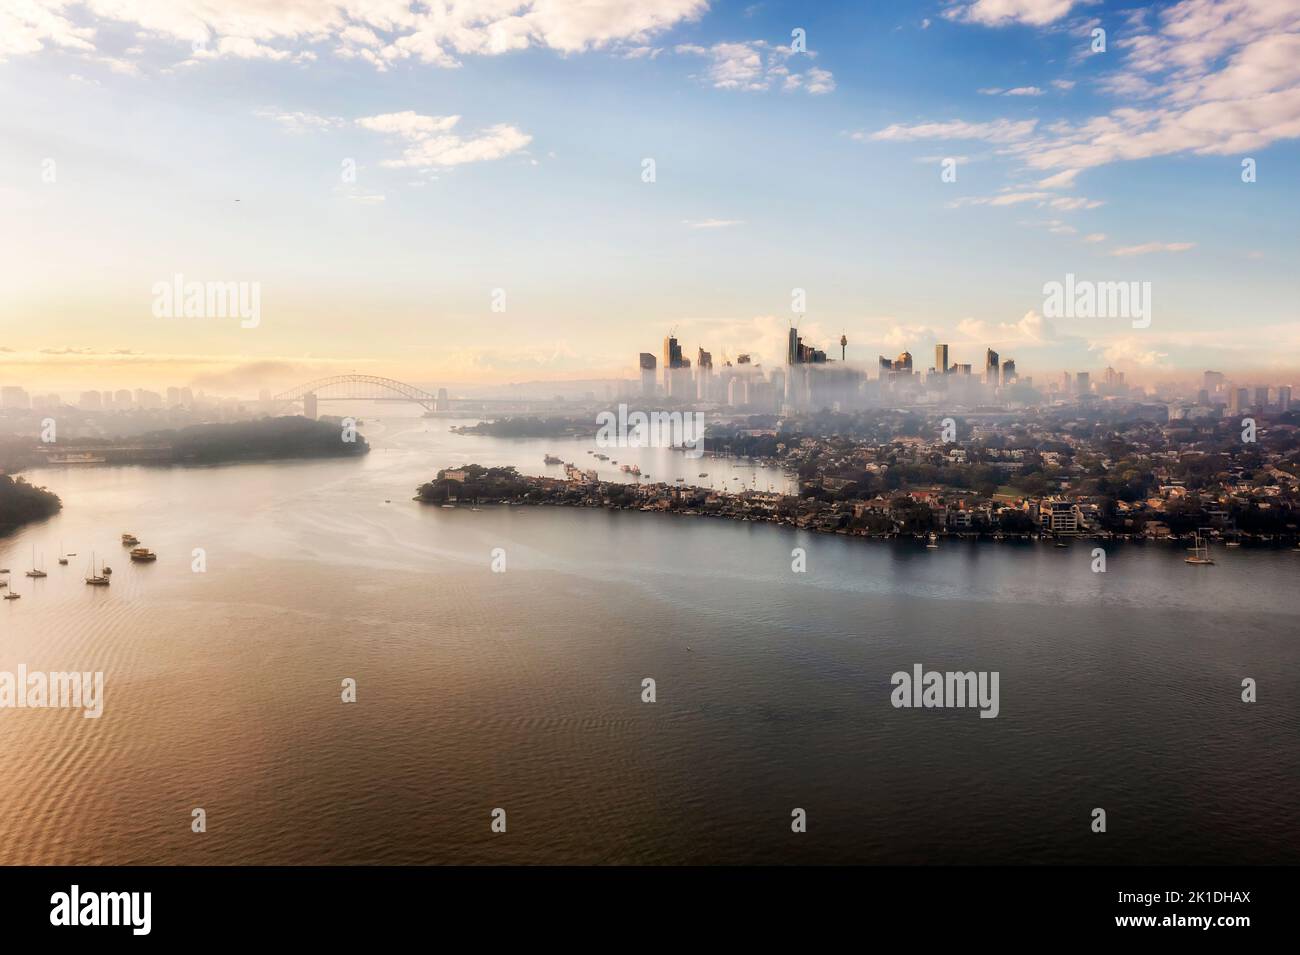 Paisaje urbano aéreo del río Parramatta en el puerto de Sídney y monumentos arquitectónicos del distrito central de negocios en el horizonte con un tiempo nublado al amanecer. Foto de stock